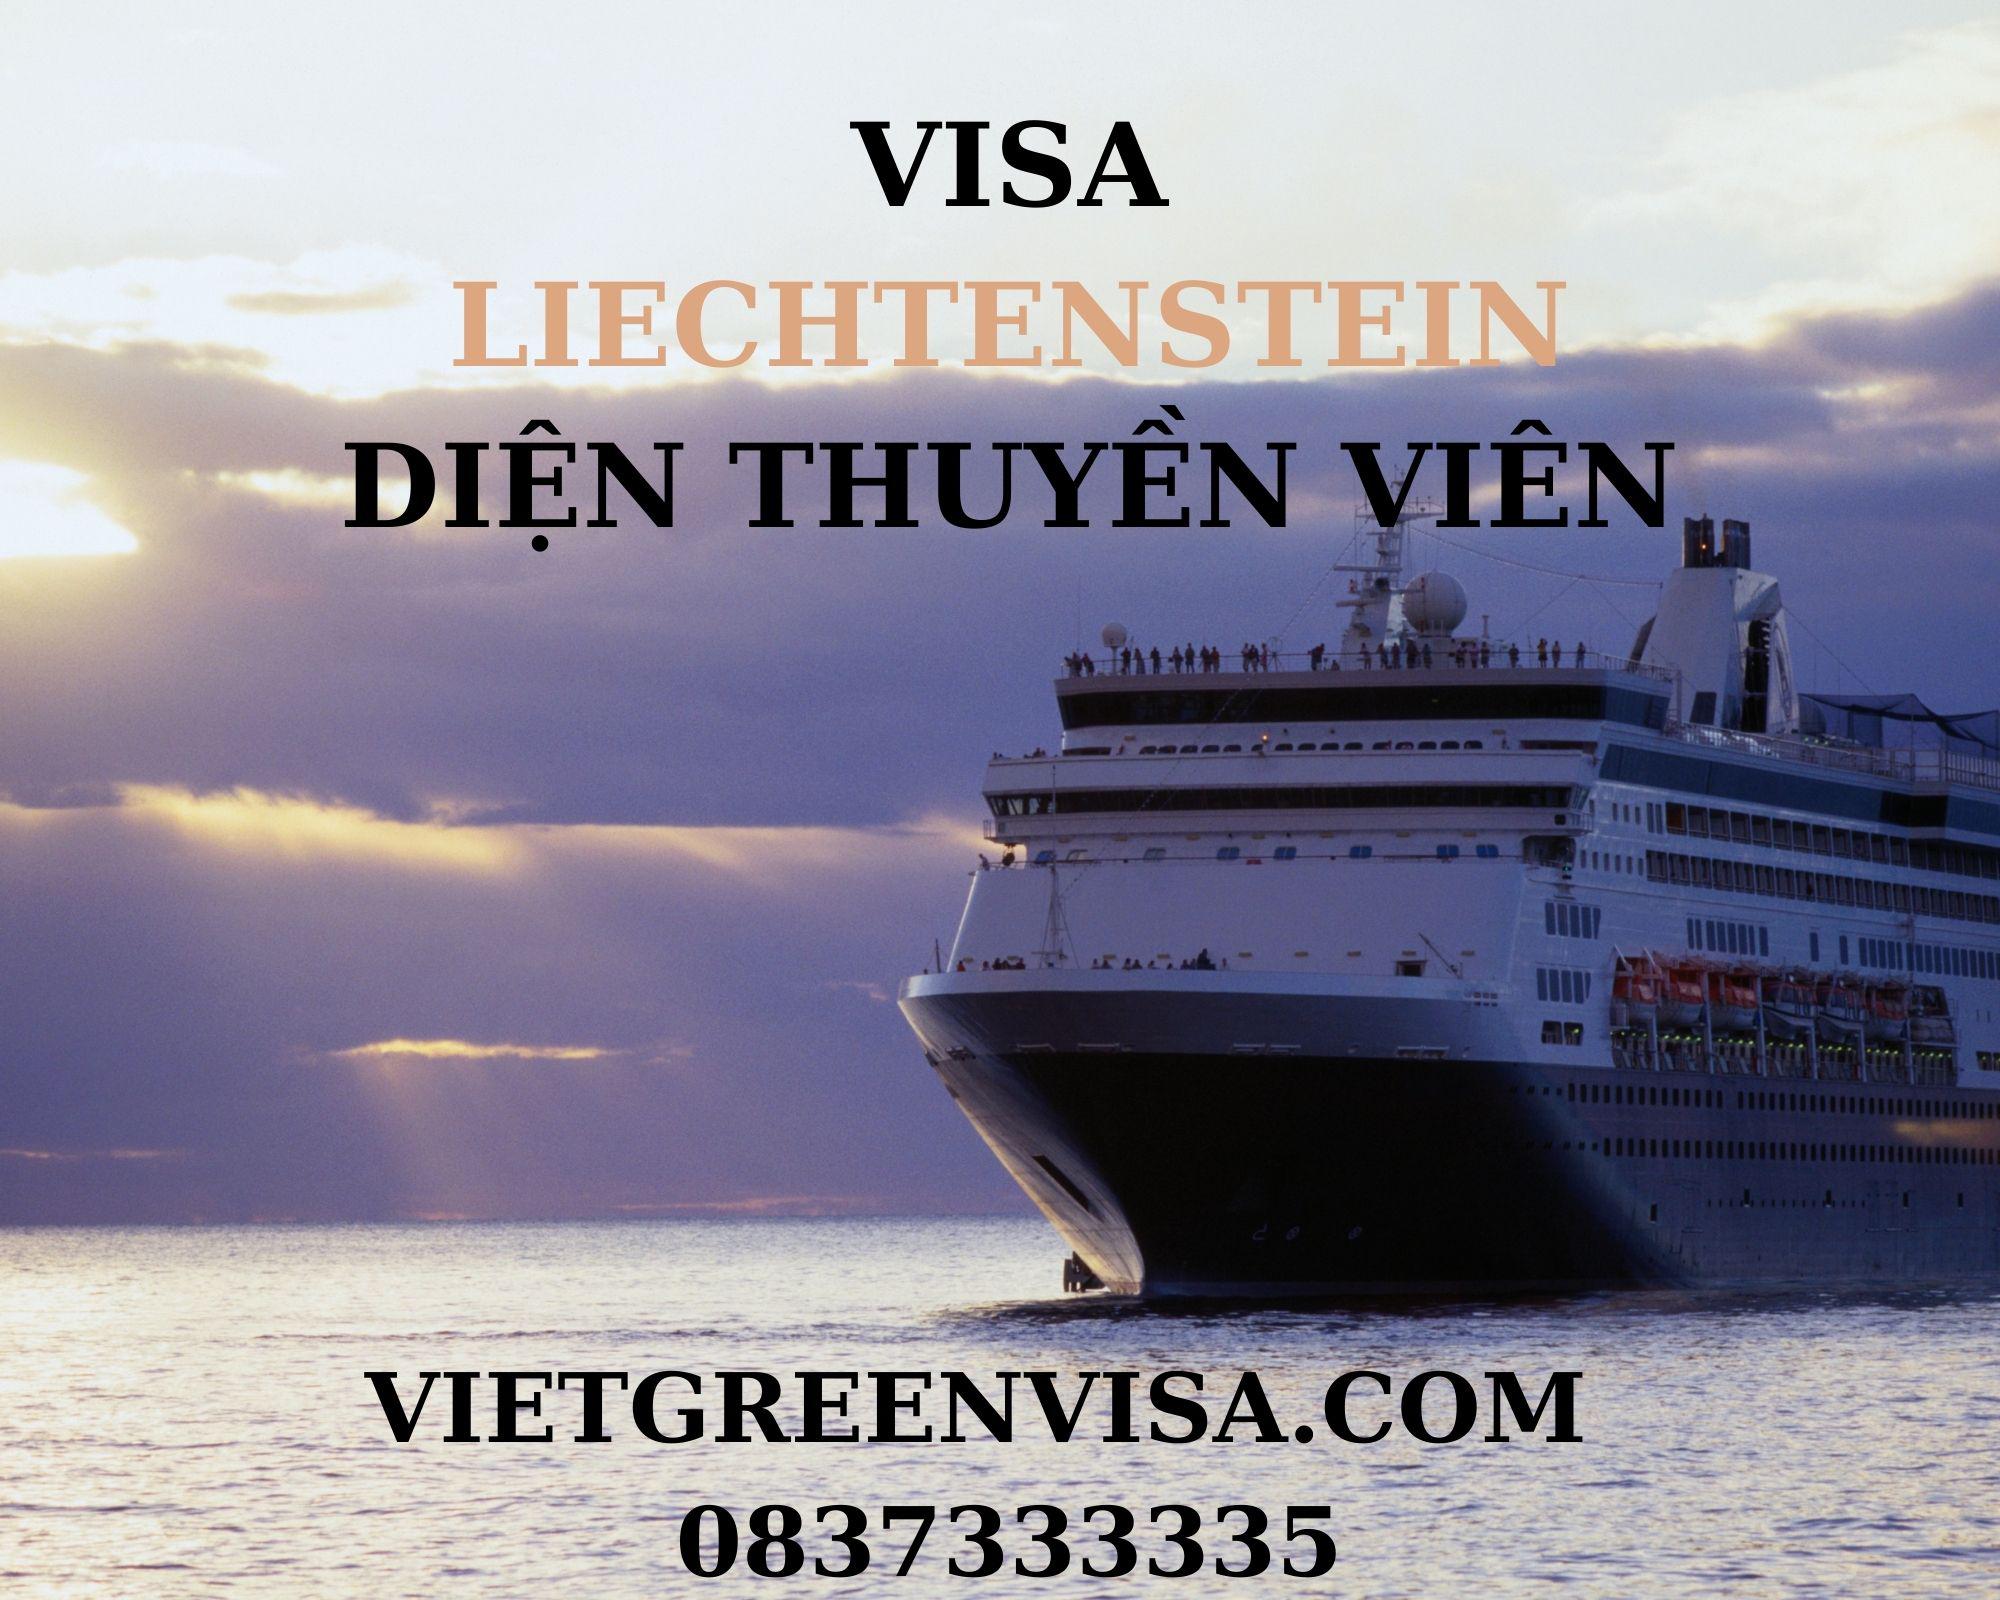 Visa Liechtenstein diện thuyền viên, visa Liechtenstein cho đoàn thuỷ thủ